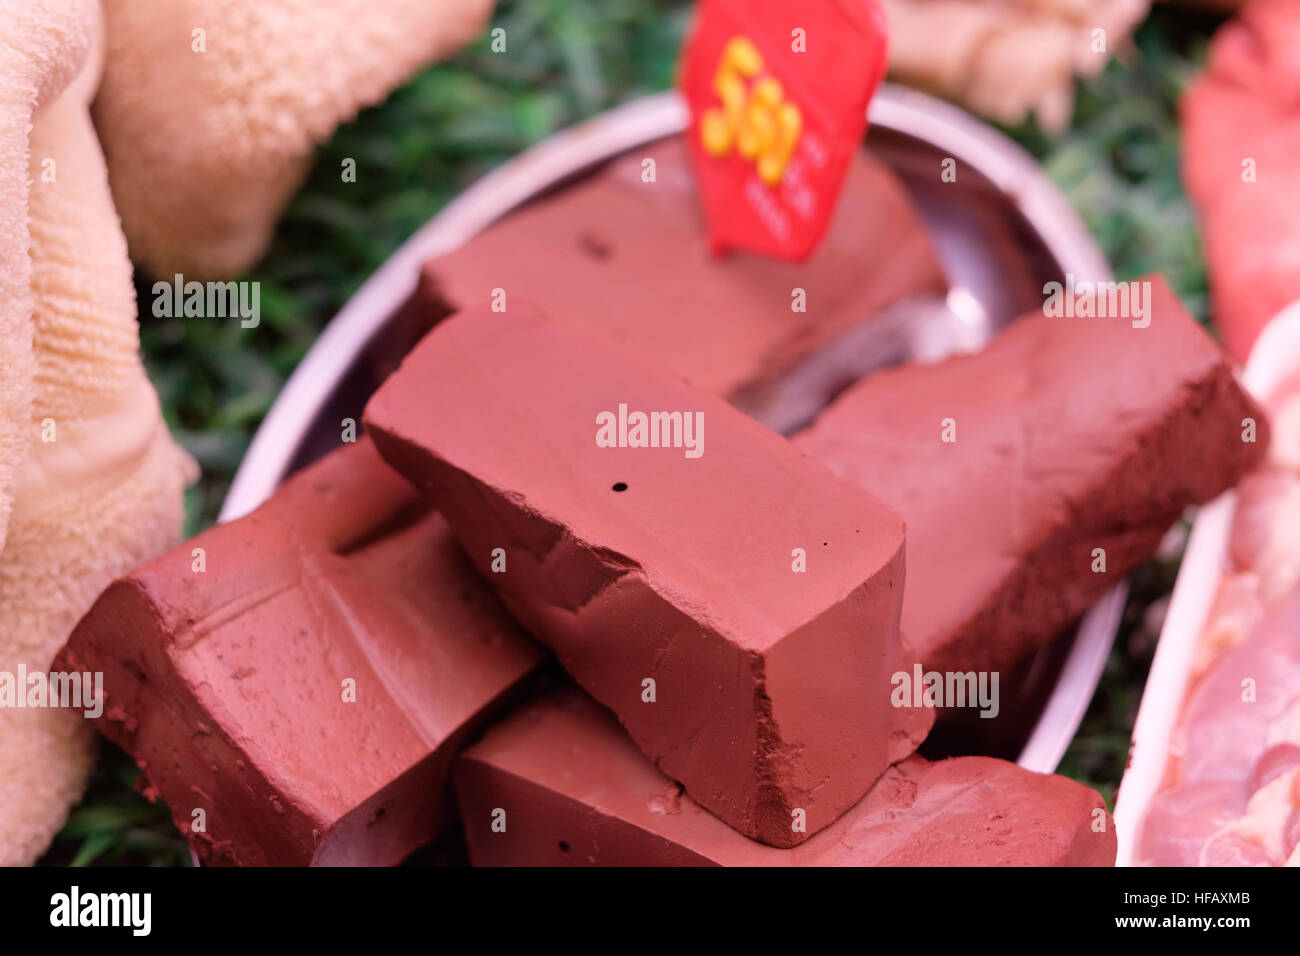 Schweinefleisch Rindfleisch Hühnerfleisch Leberpastete rot cremige schöne Stockfoto